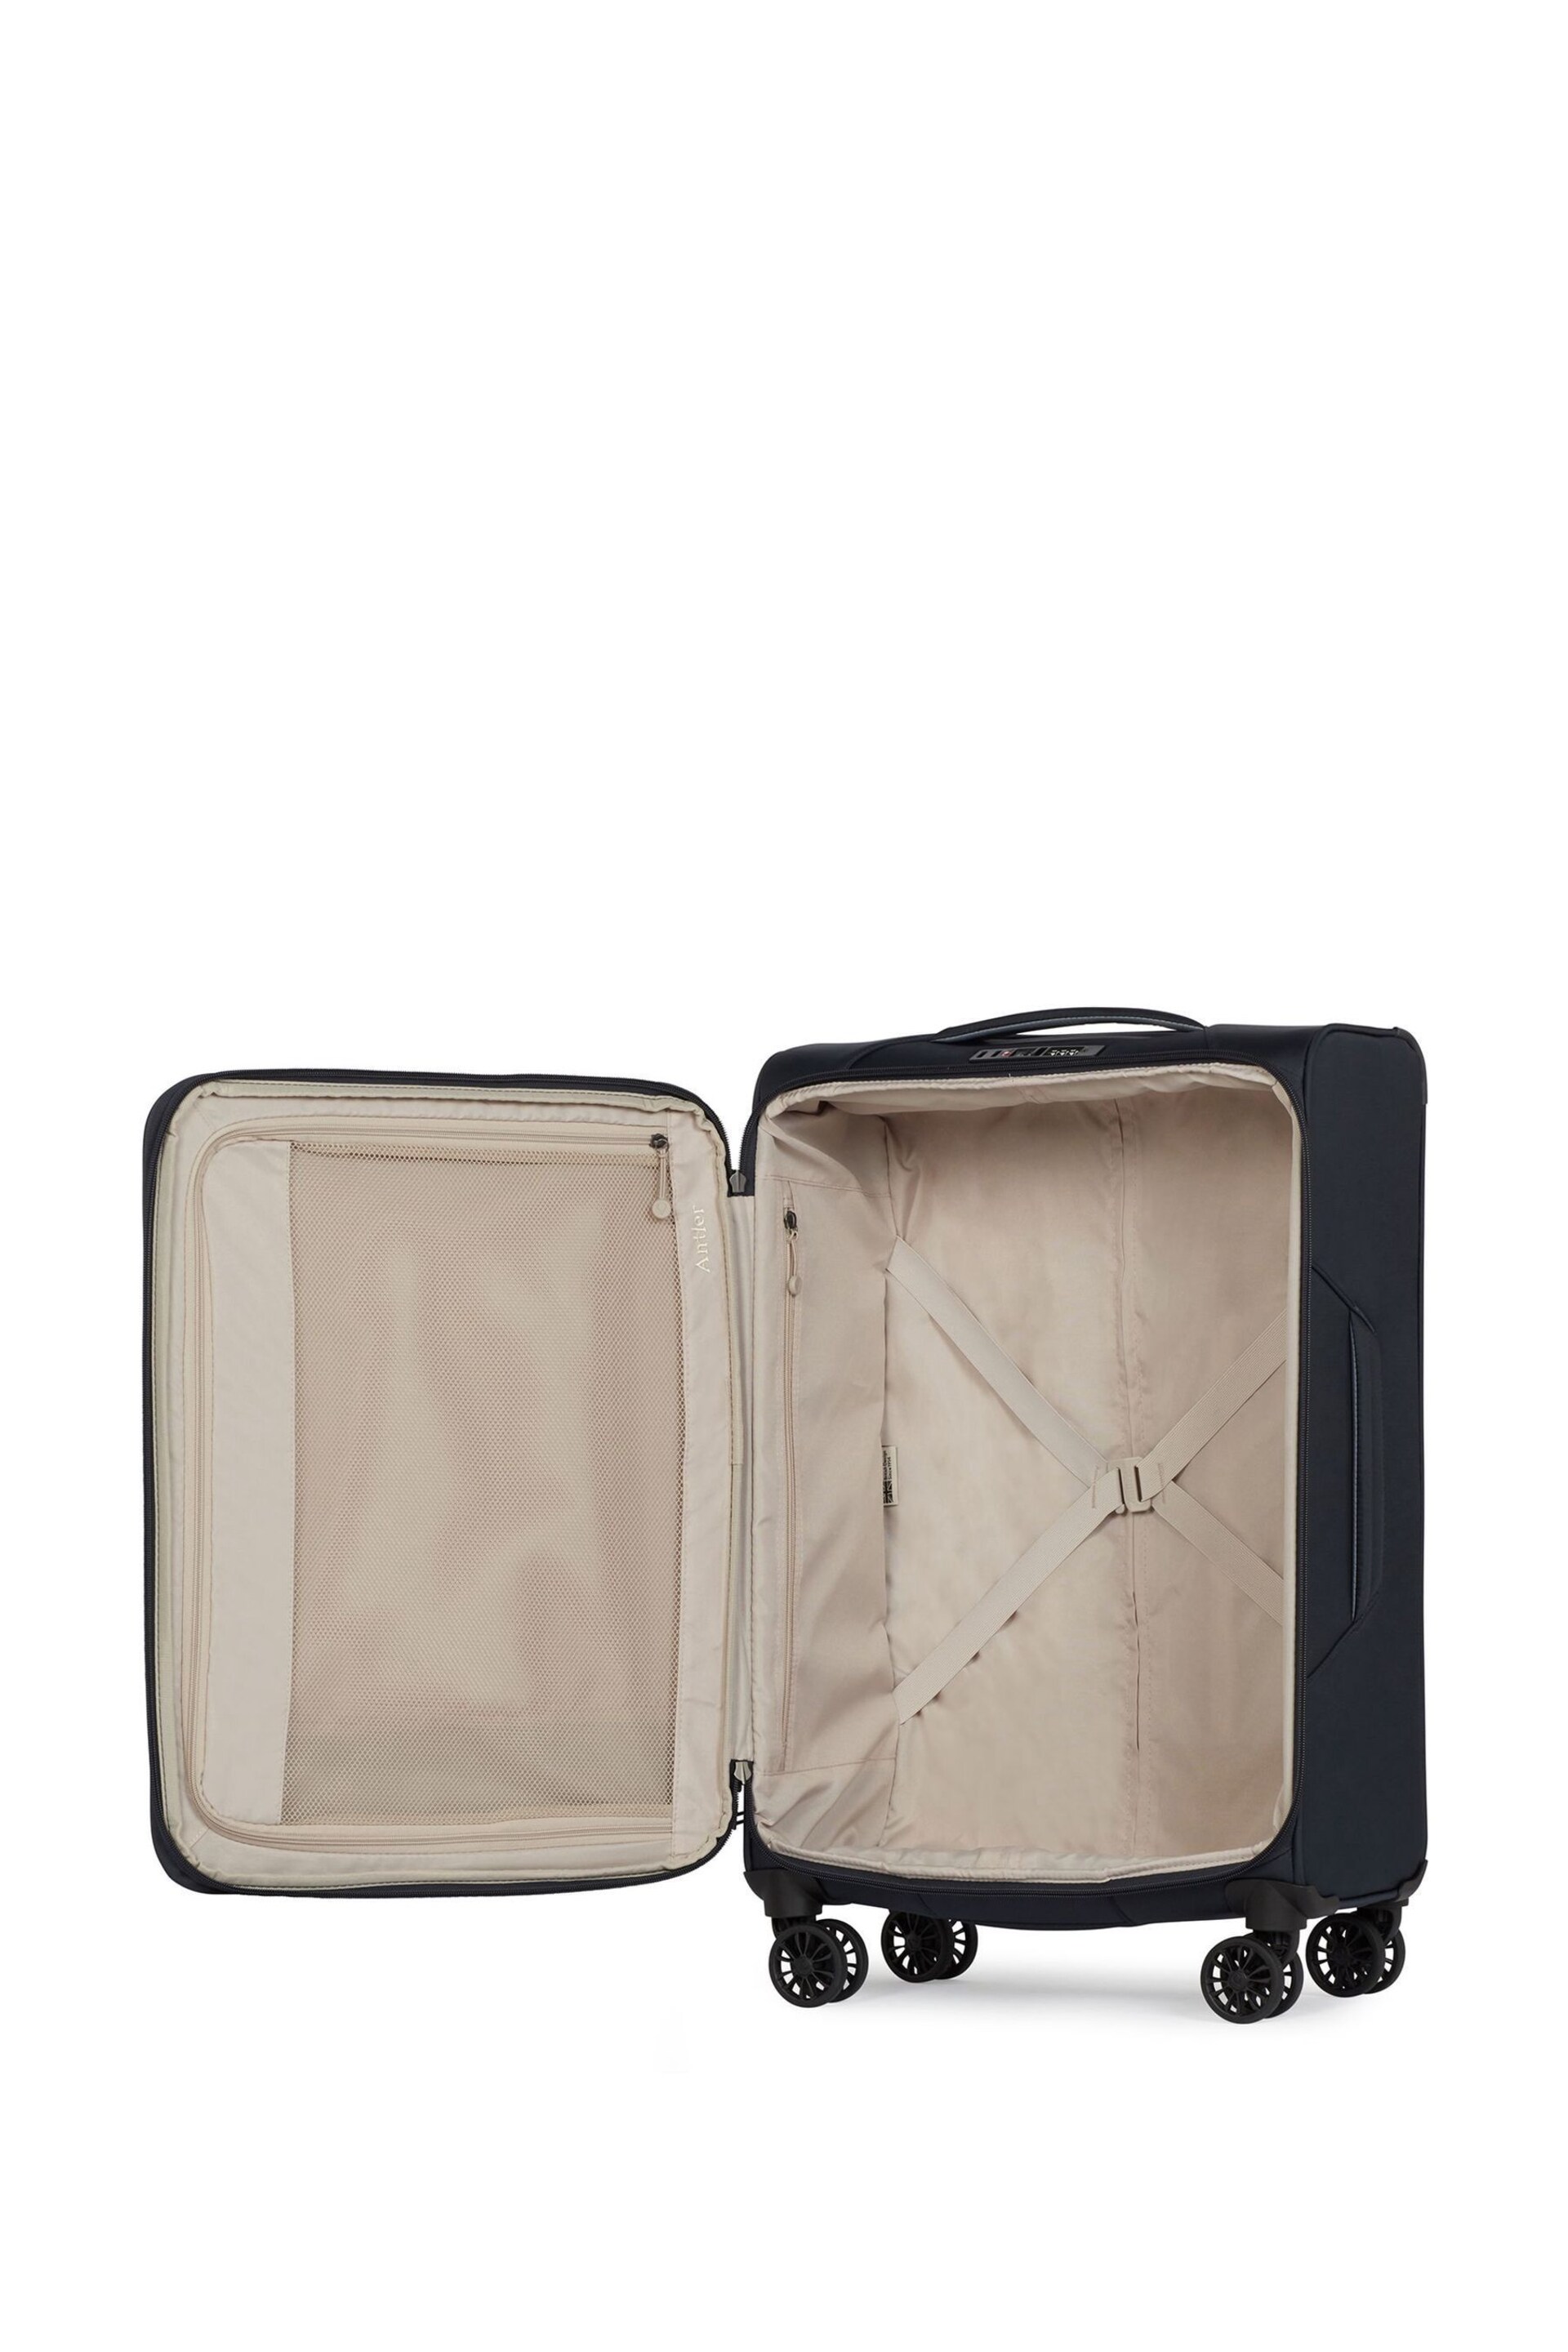 Antler Blue Brixham Medium Suitcase - Image 4 of 6